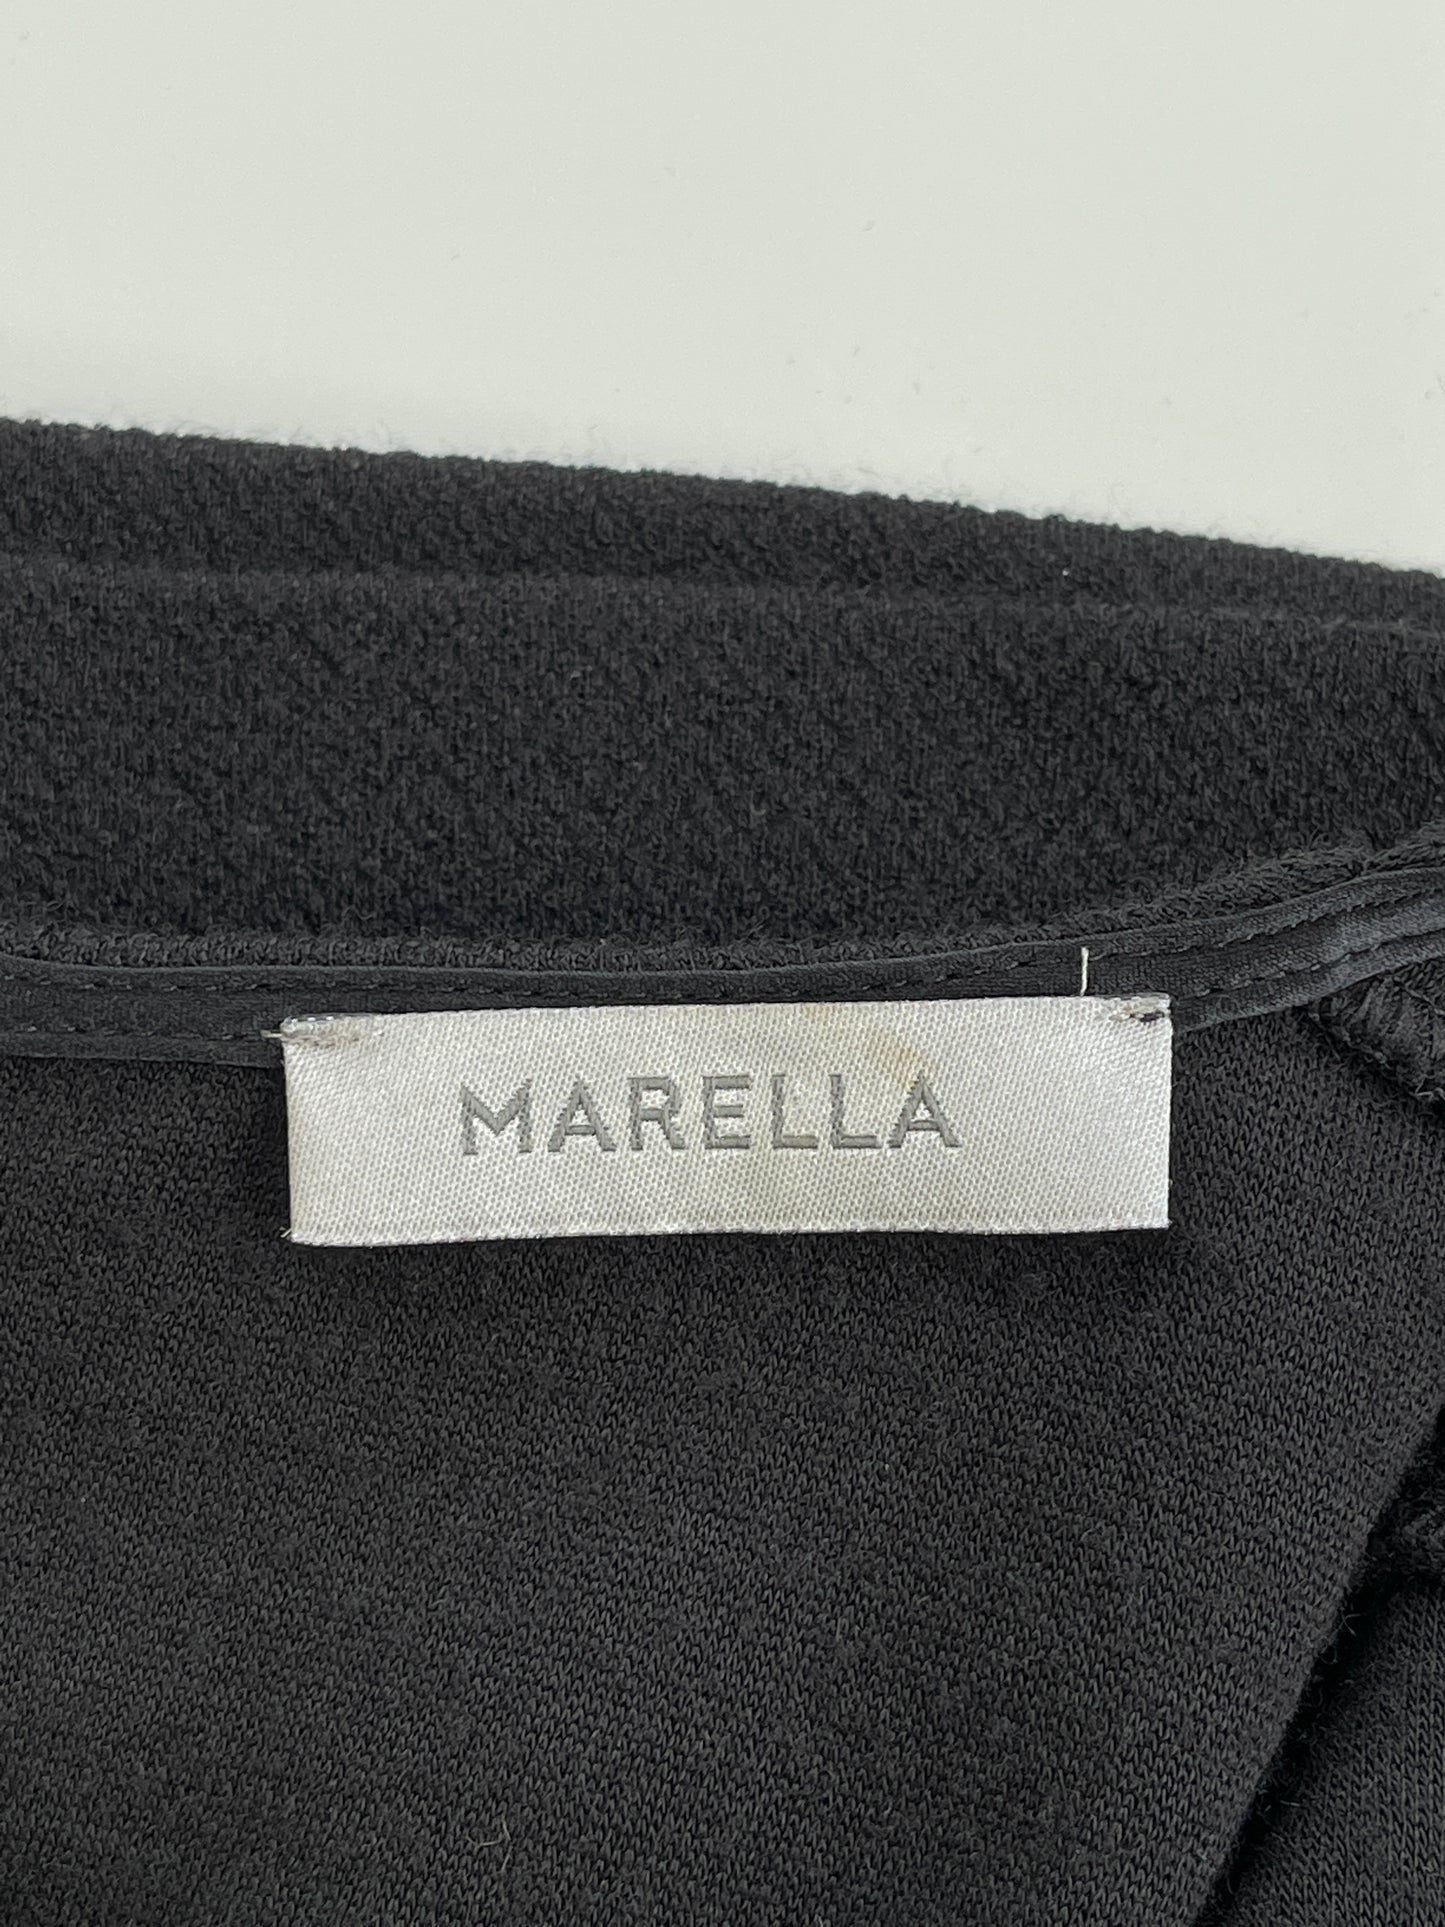 Robe noire cintrée à pinces en tricot texturé (XS)